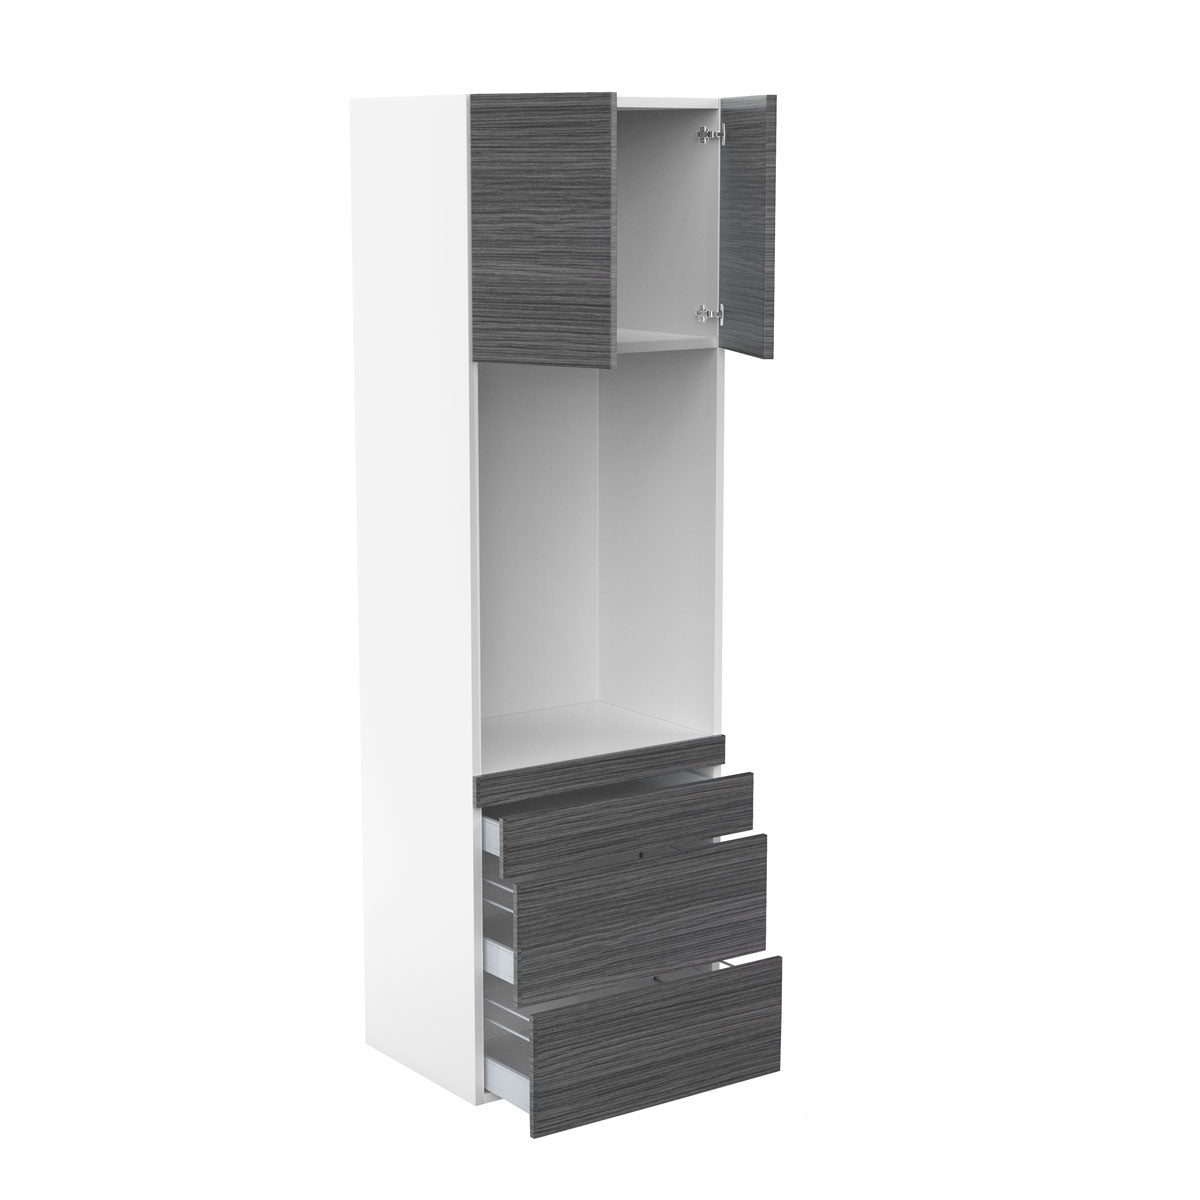 RTA - Dark Wood - Single Oven Tall Cabinets | 30"W x 96"H x 23.8"D